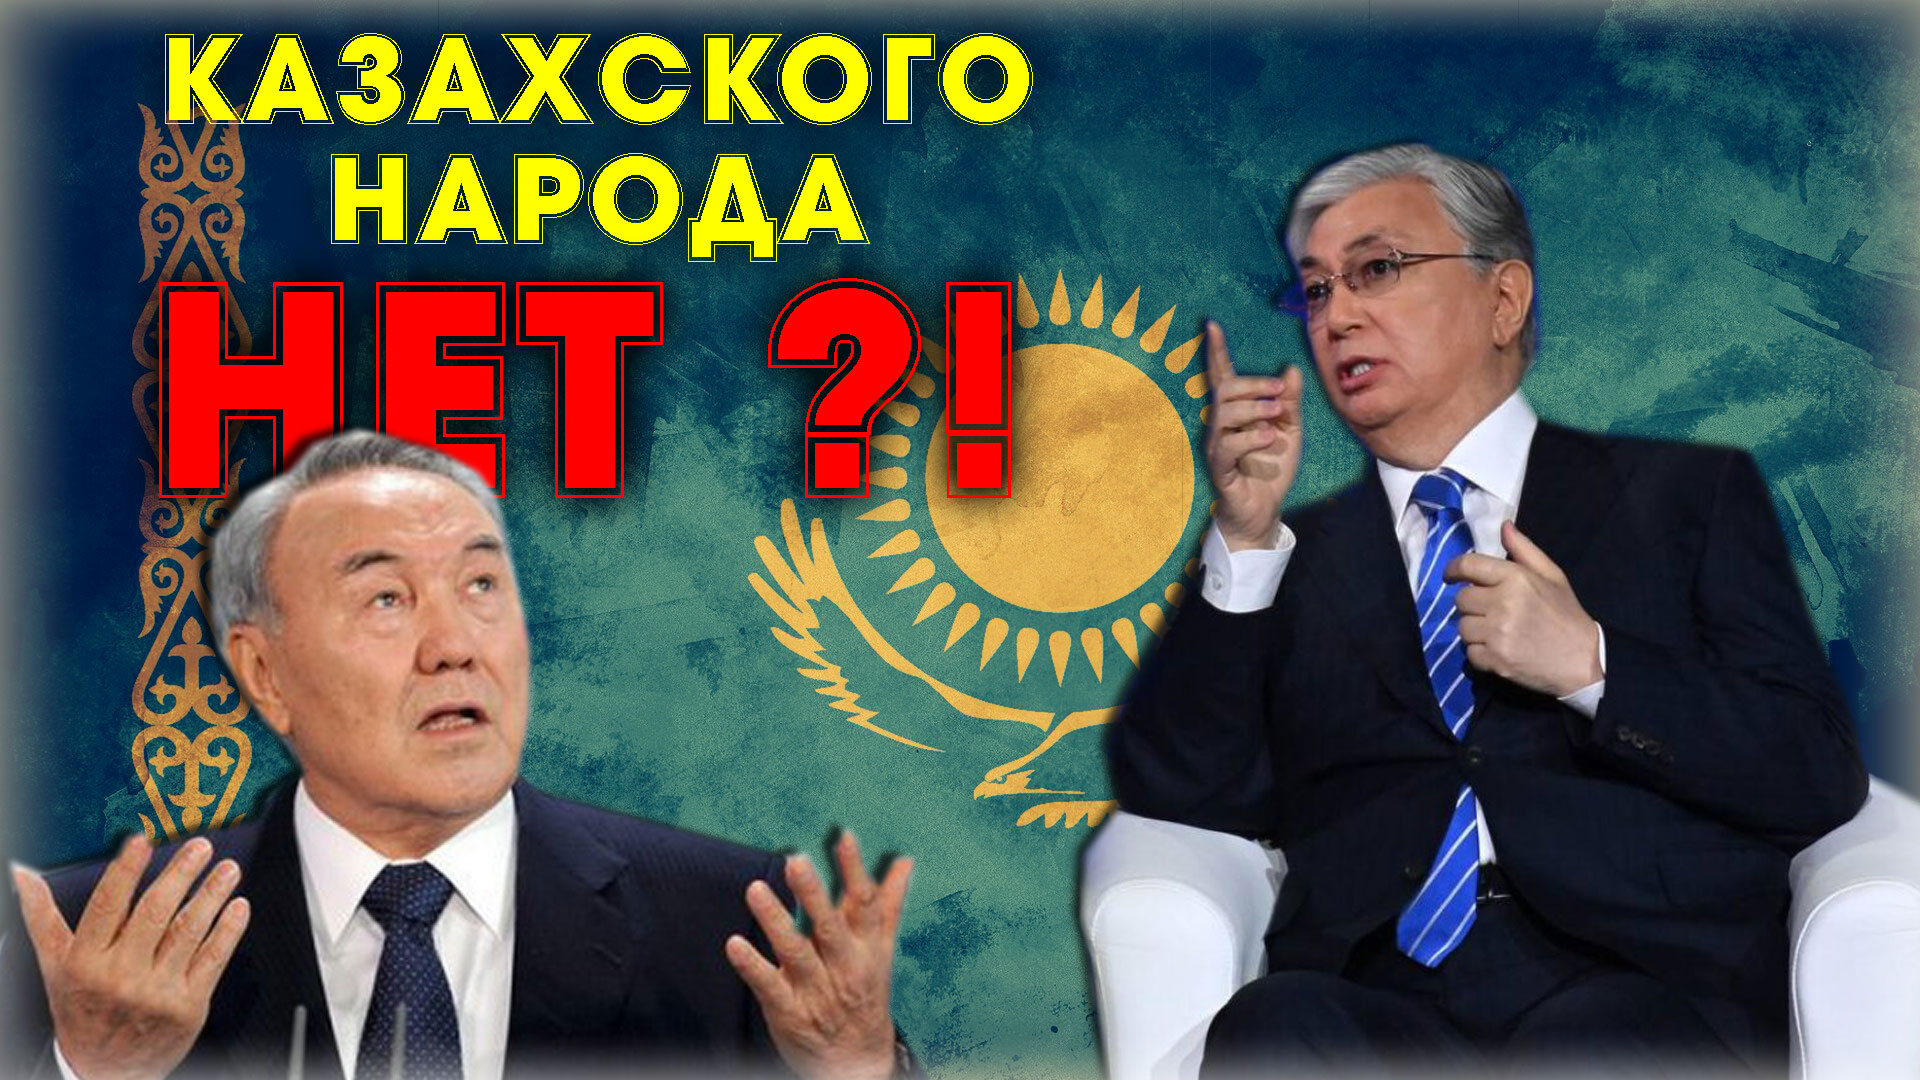 "КАЗАХИ ПОЛУЧИЛИ СТРЕСС !!!" ⛔️ Откровенное признание политолога-казаха о современном Казахстане